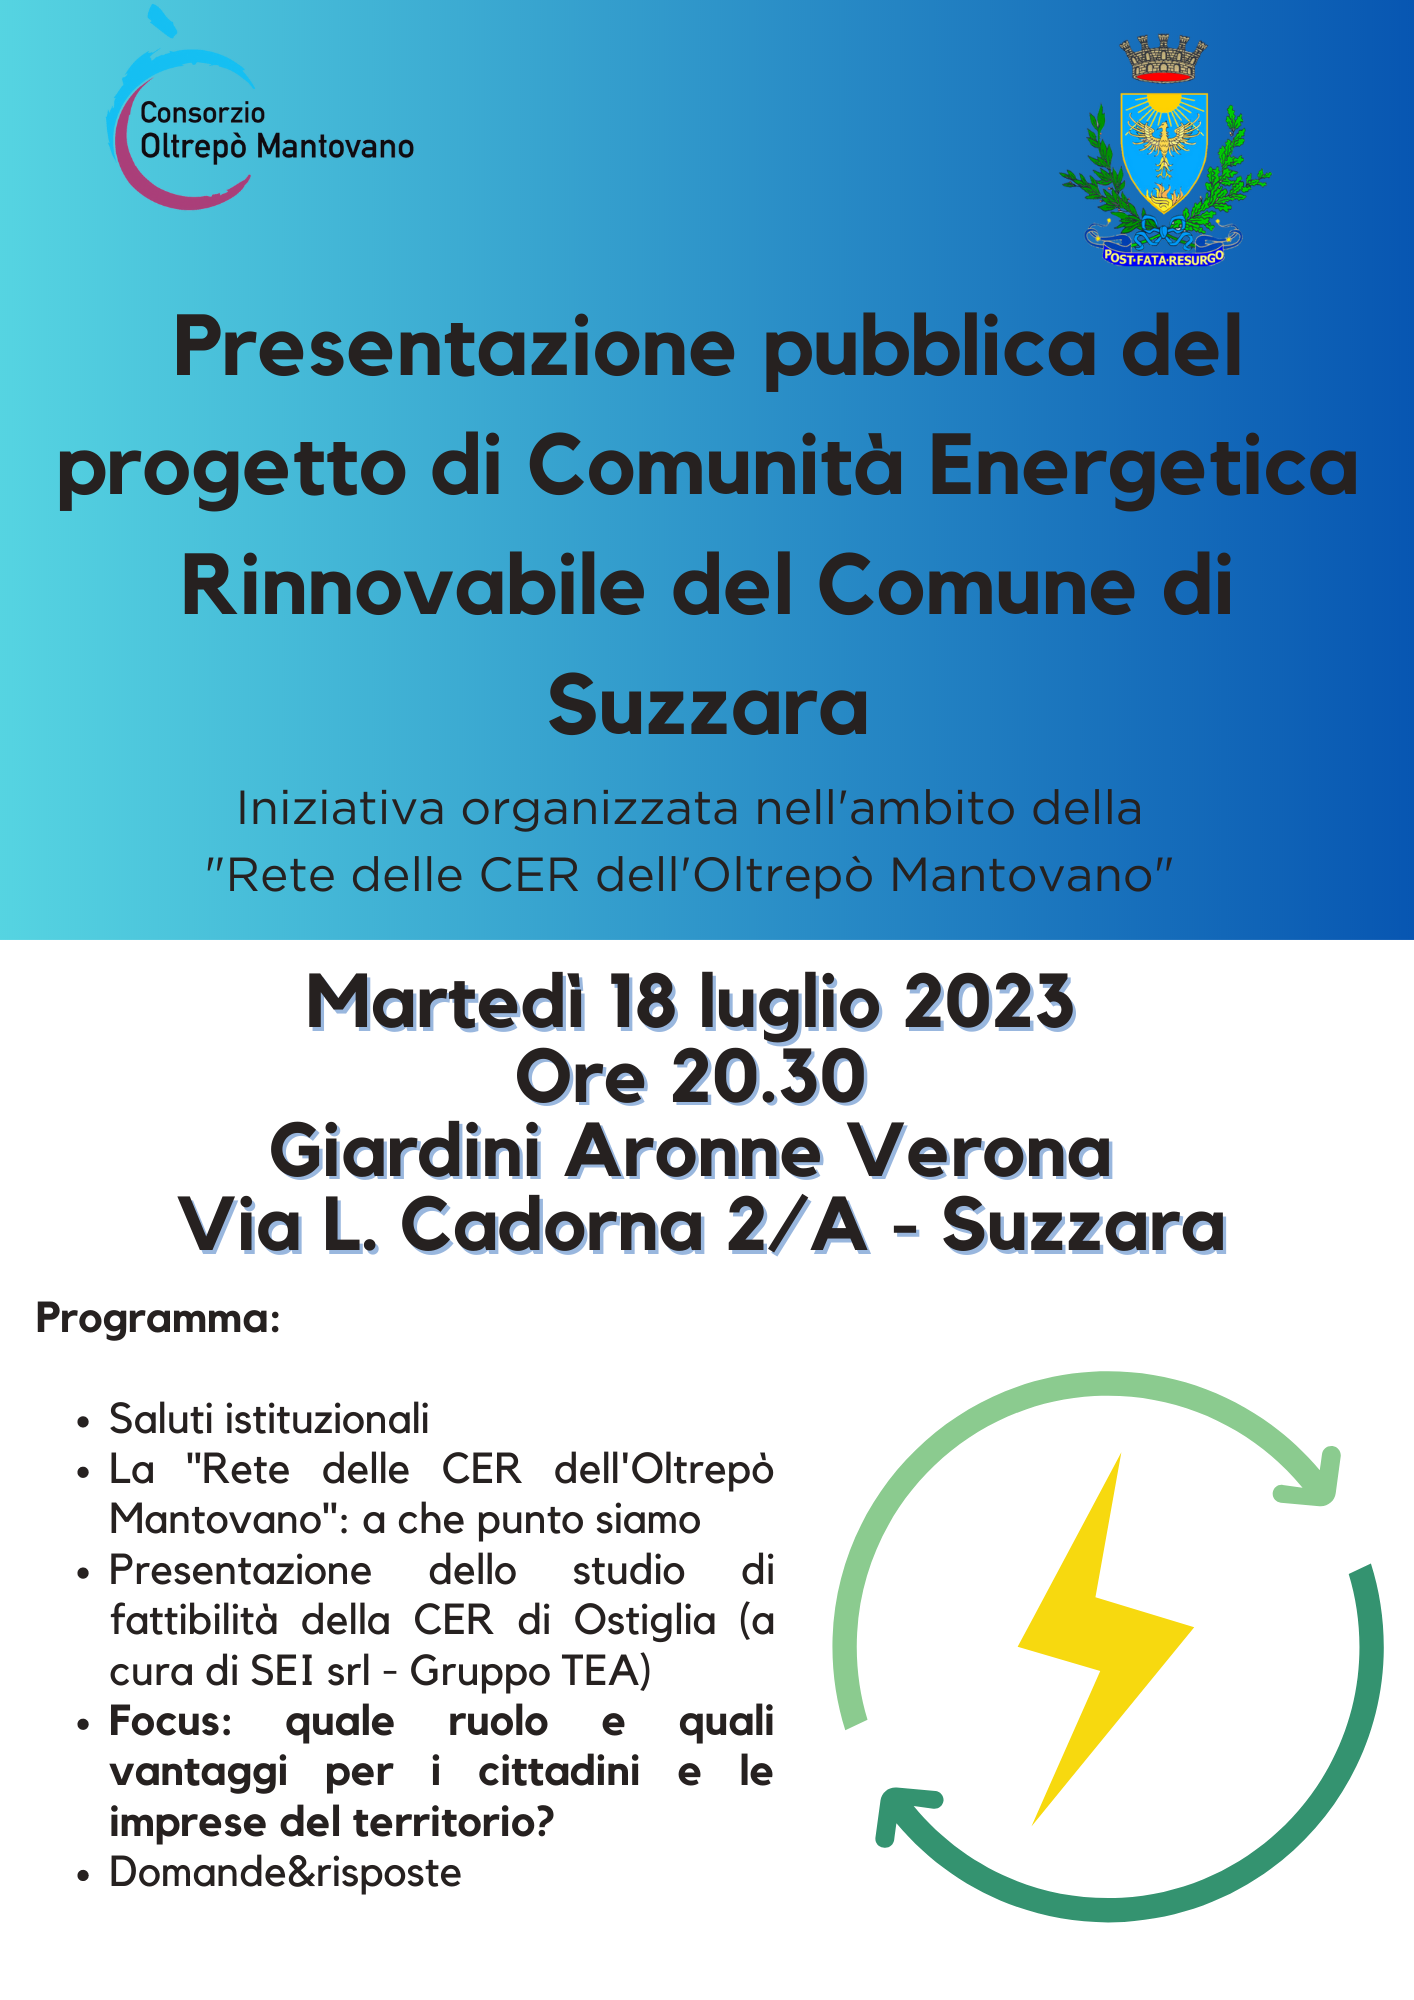 Rete delle Comunità Energetiche Rinnovabili (CER) dell’Oltrepò Mantovano